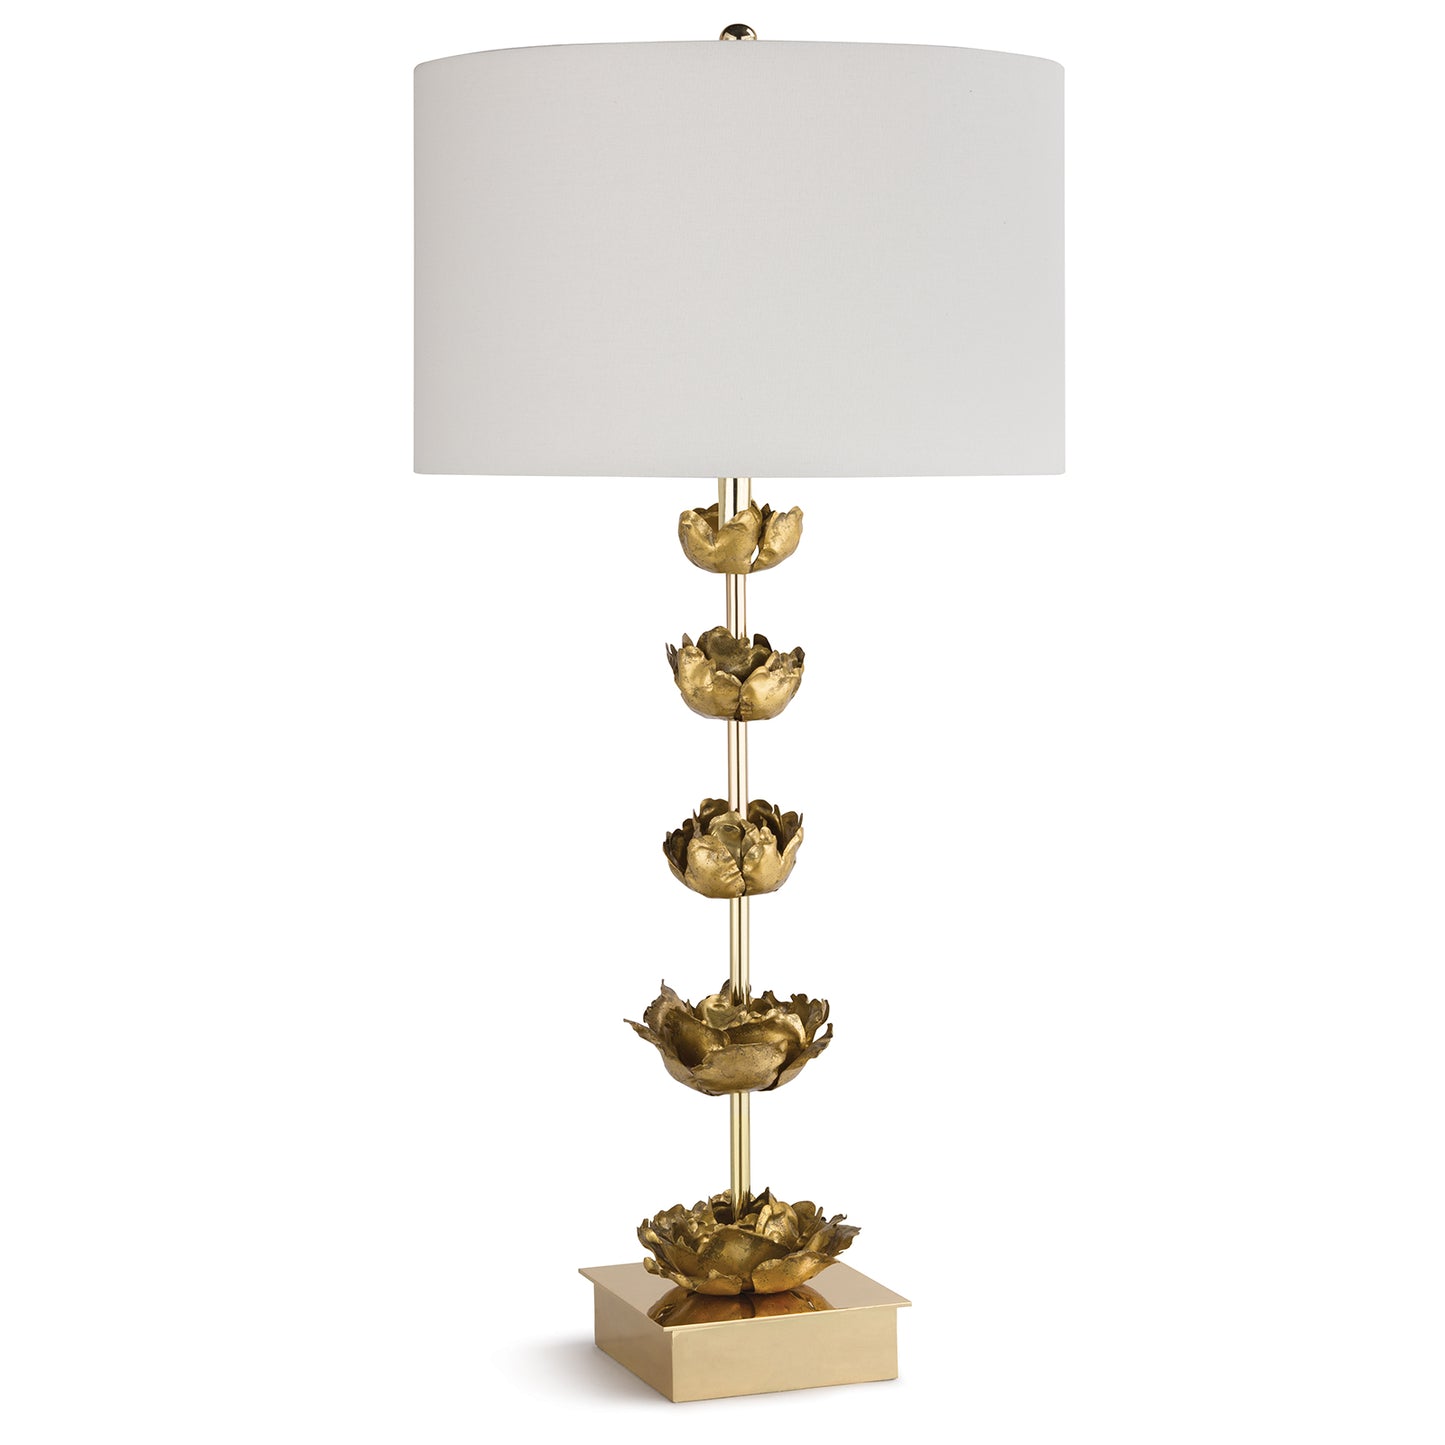 Regina Andrew Adeline Table Lamp